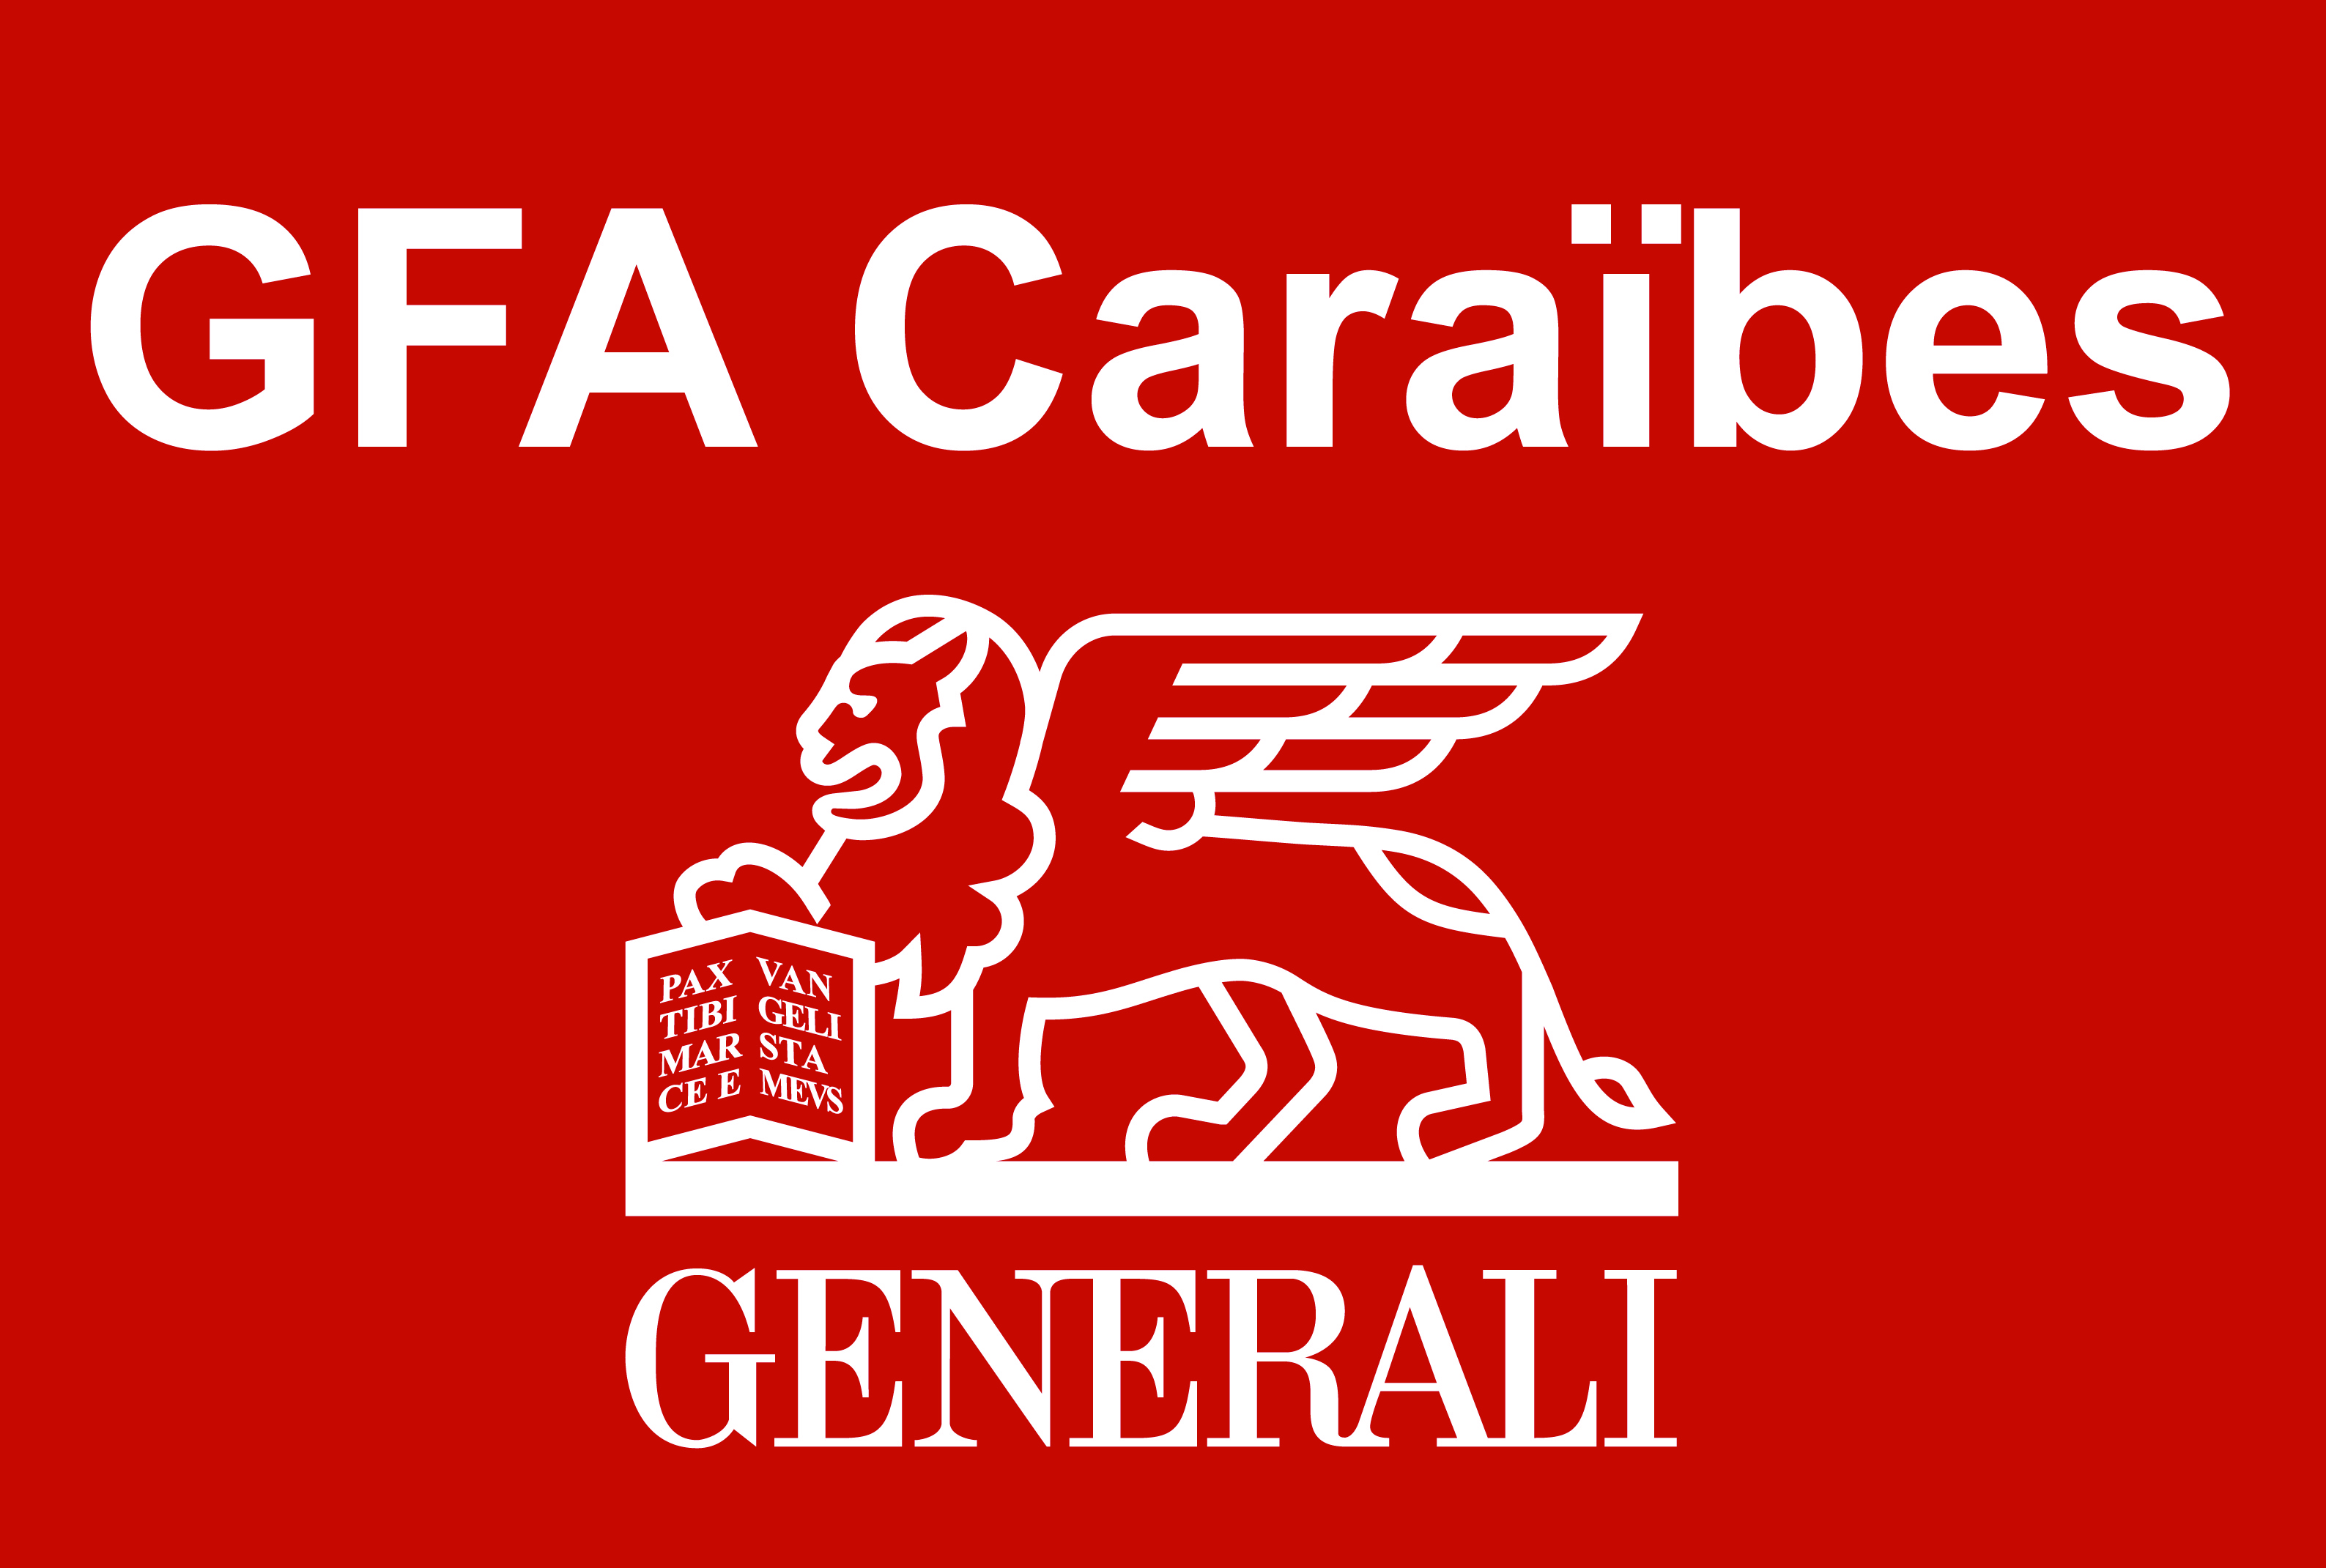 GFA Caraibes